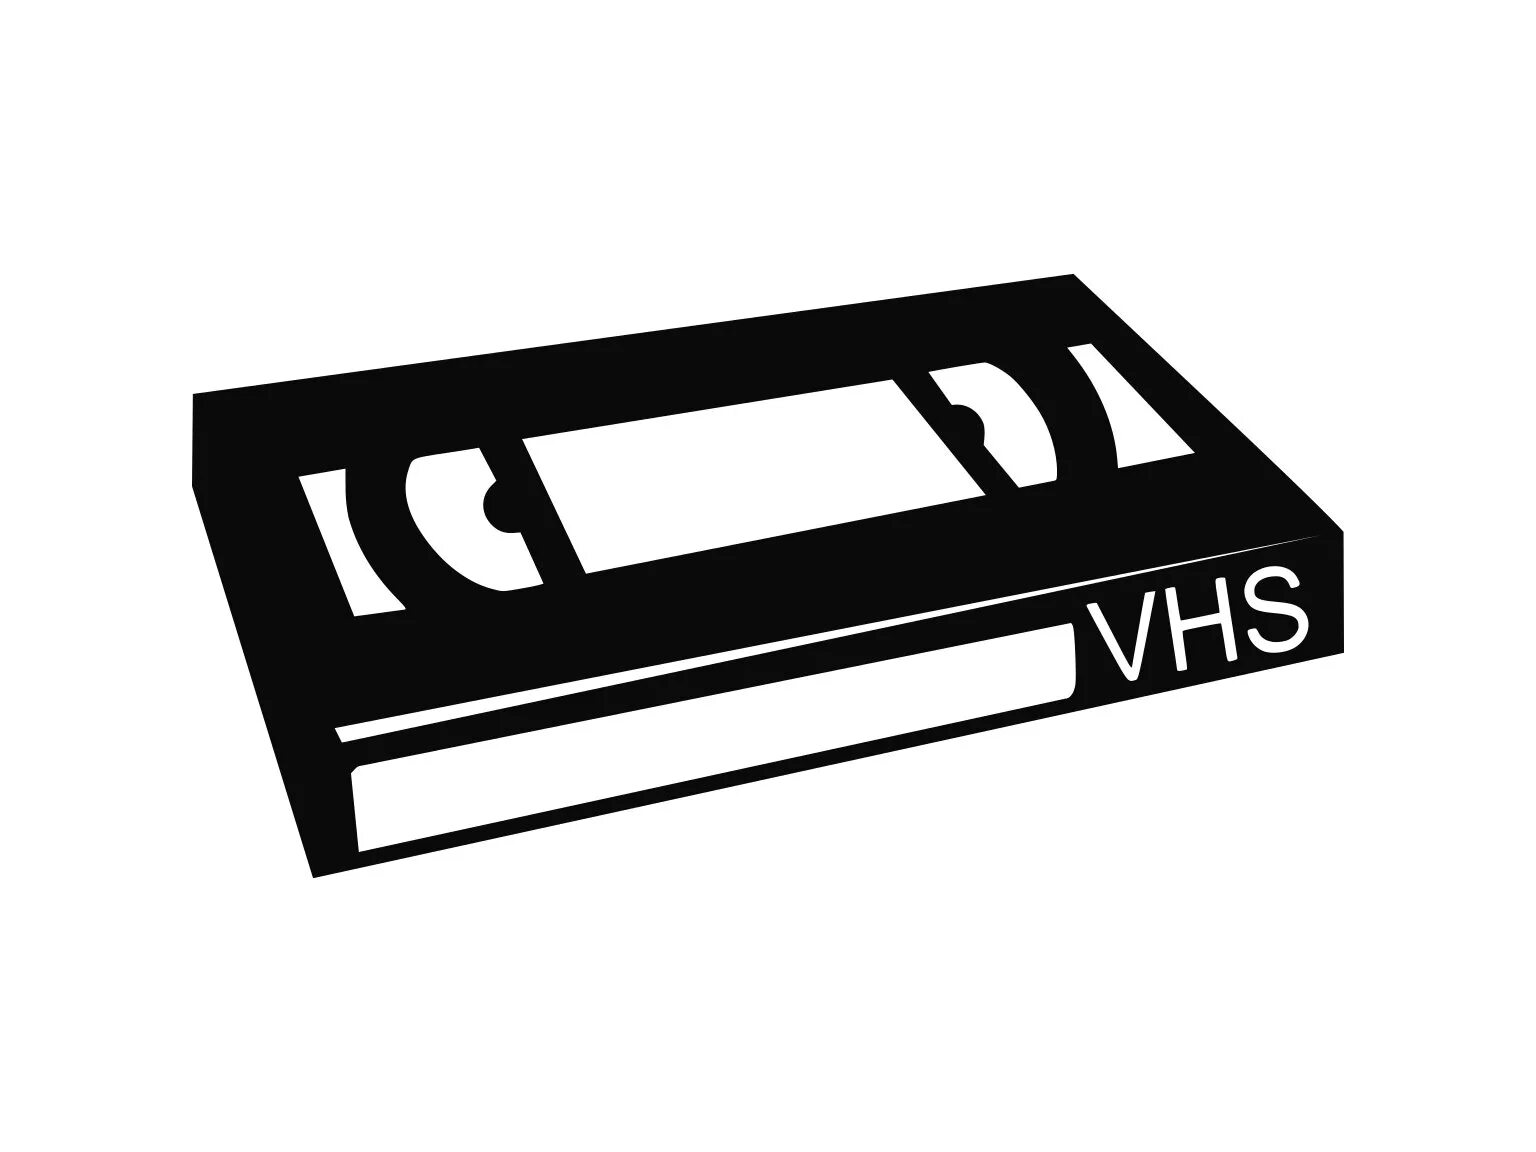 Vhs что это. VHS кассеты. Видеокассета рисунок. VHS кассета вектор. Видеокассета значок.